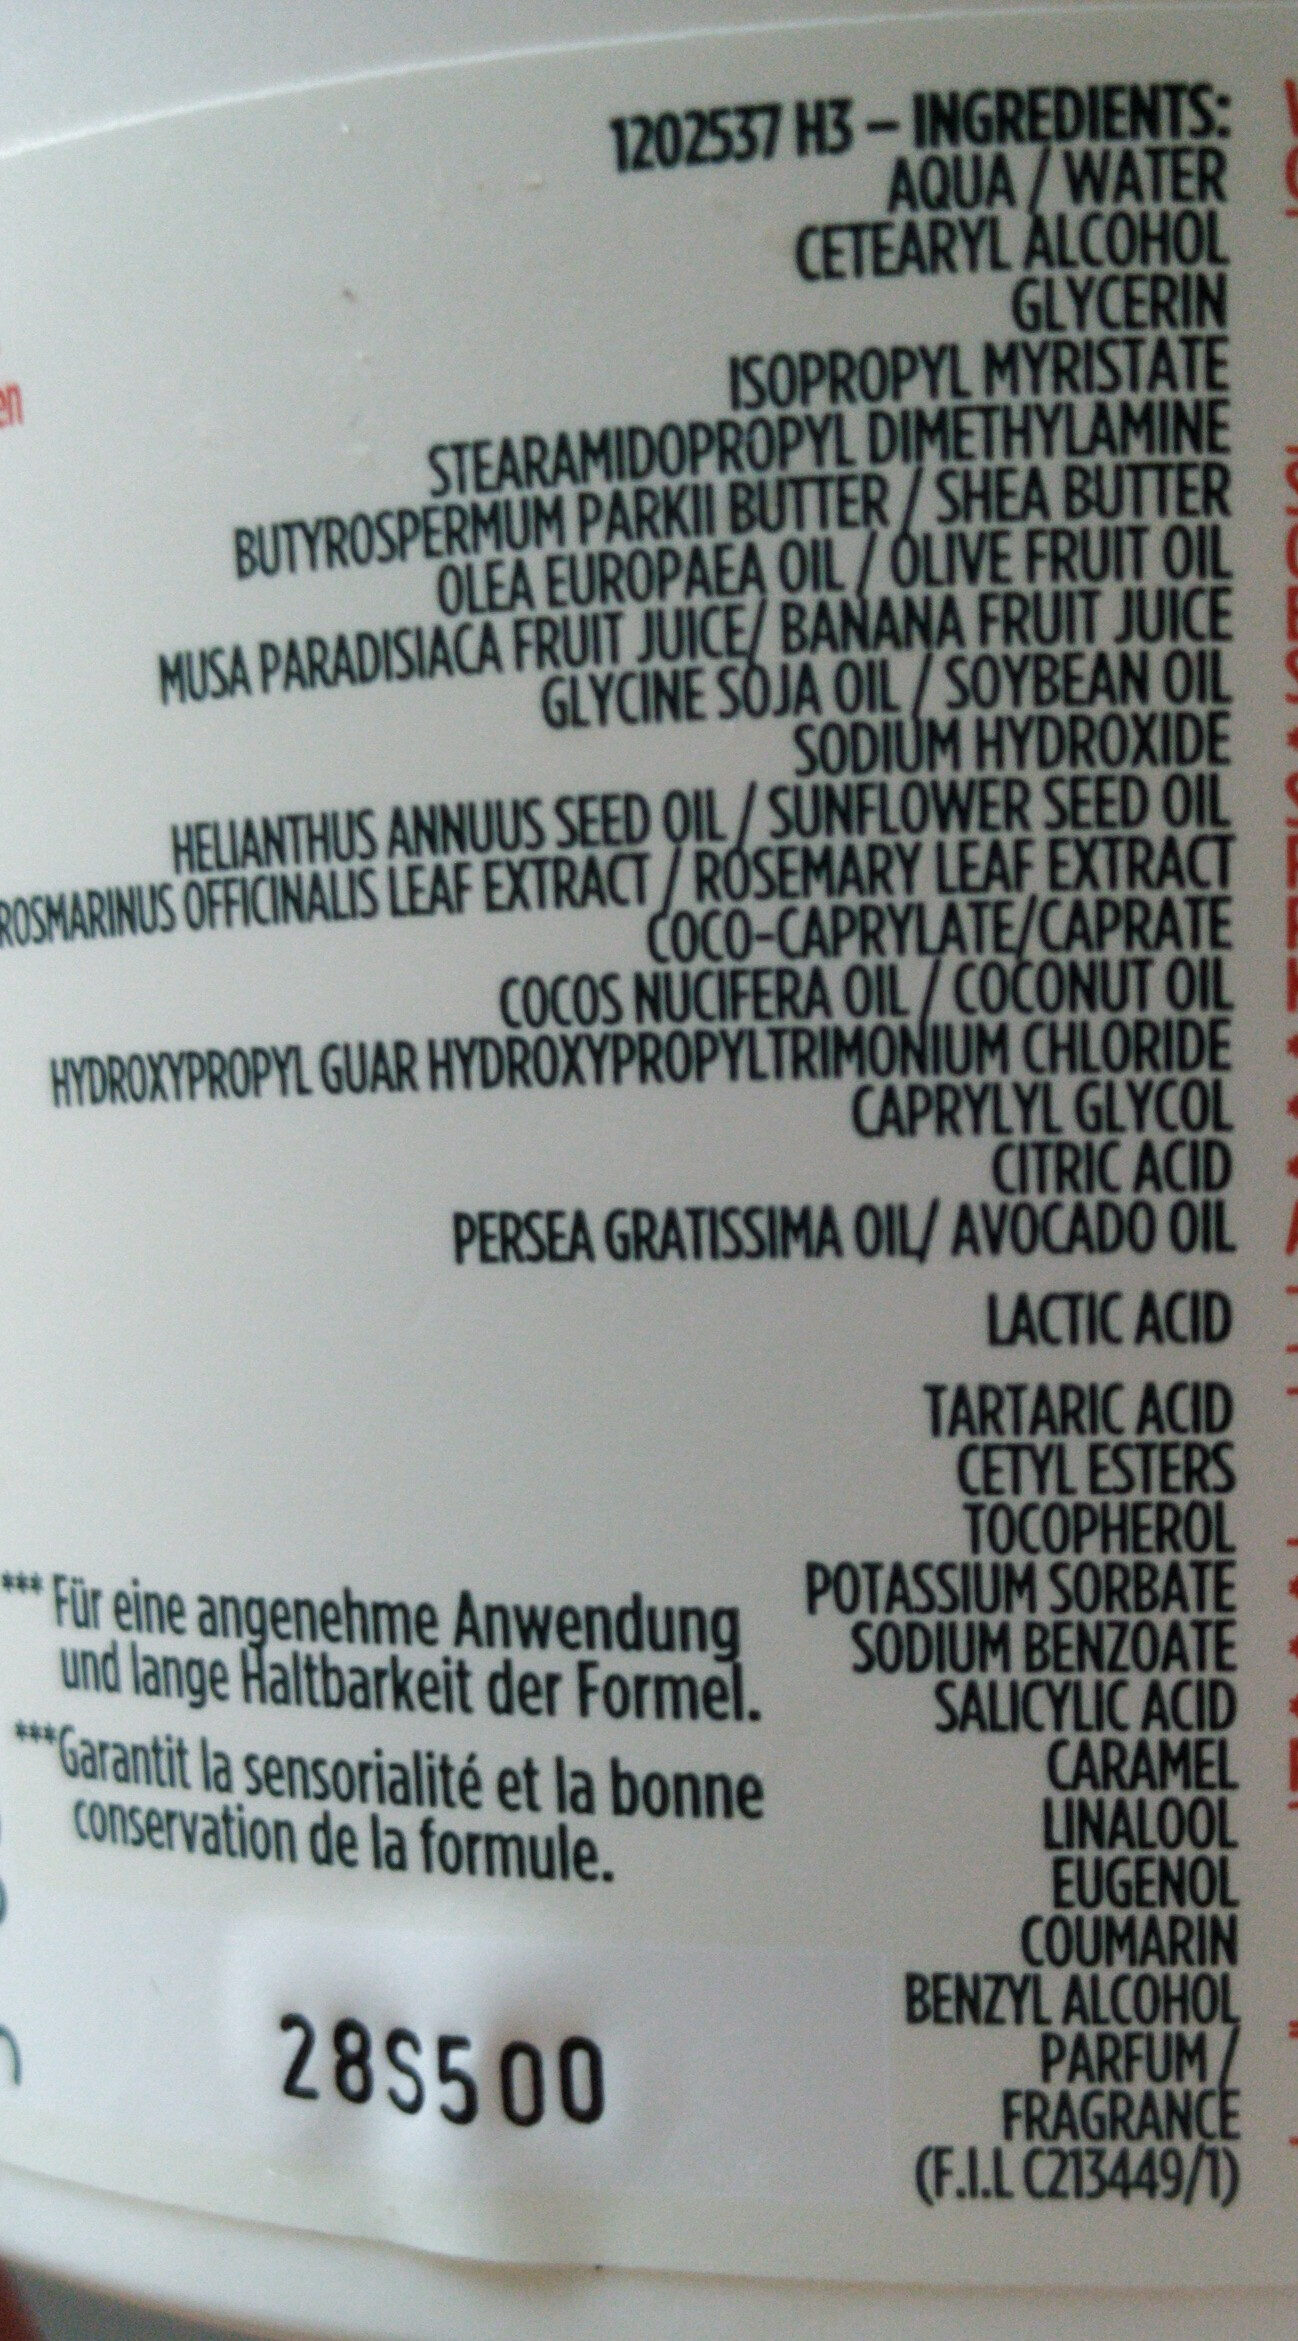 FRUCTIS - Banana Hair Food - Ingredients - en